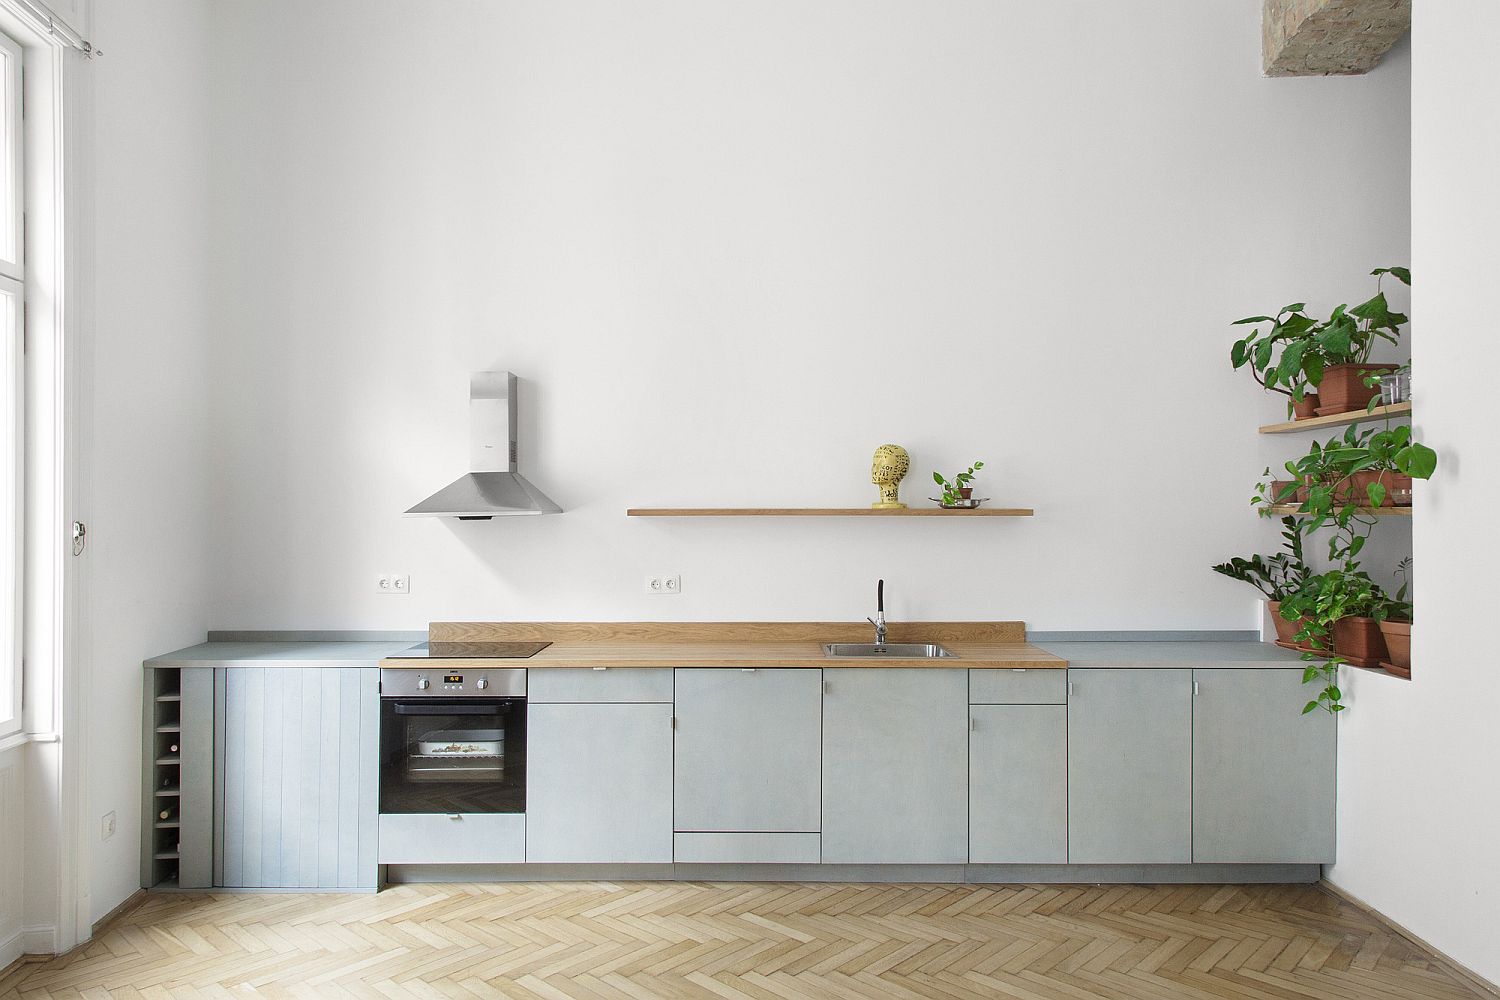 Hình ảnh phòng bếp màu trắng tối giản với tủ bếp dưới màu xám, ống hút mùi nhỏ, kệ cây xanh trang trí ở góc